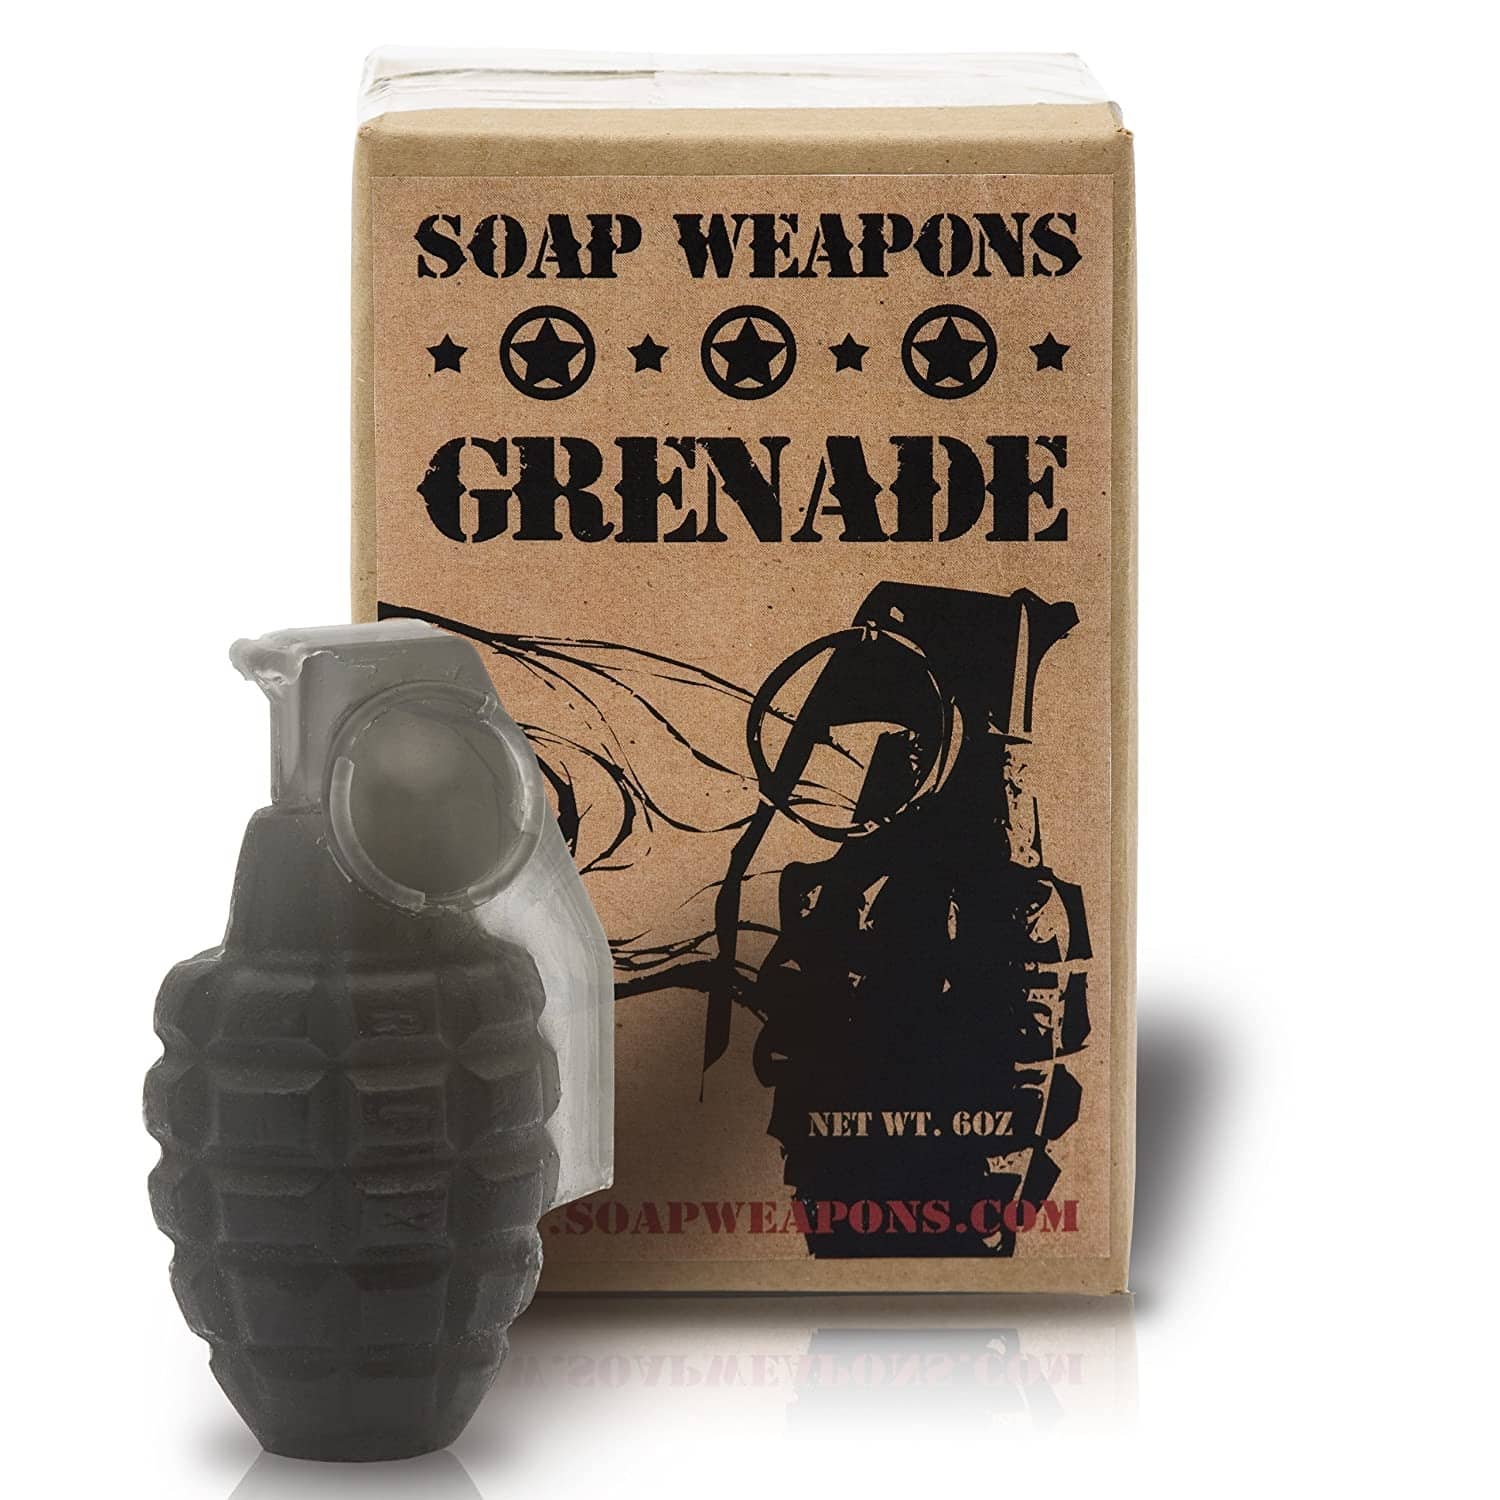 Grenade soap